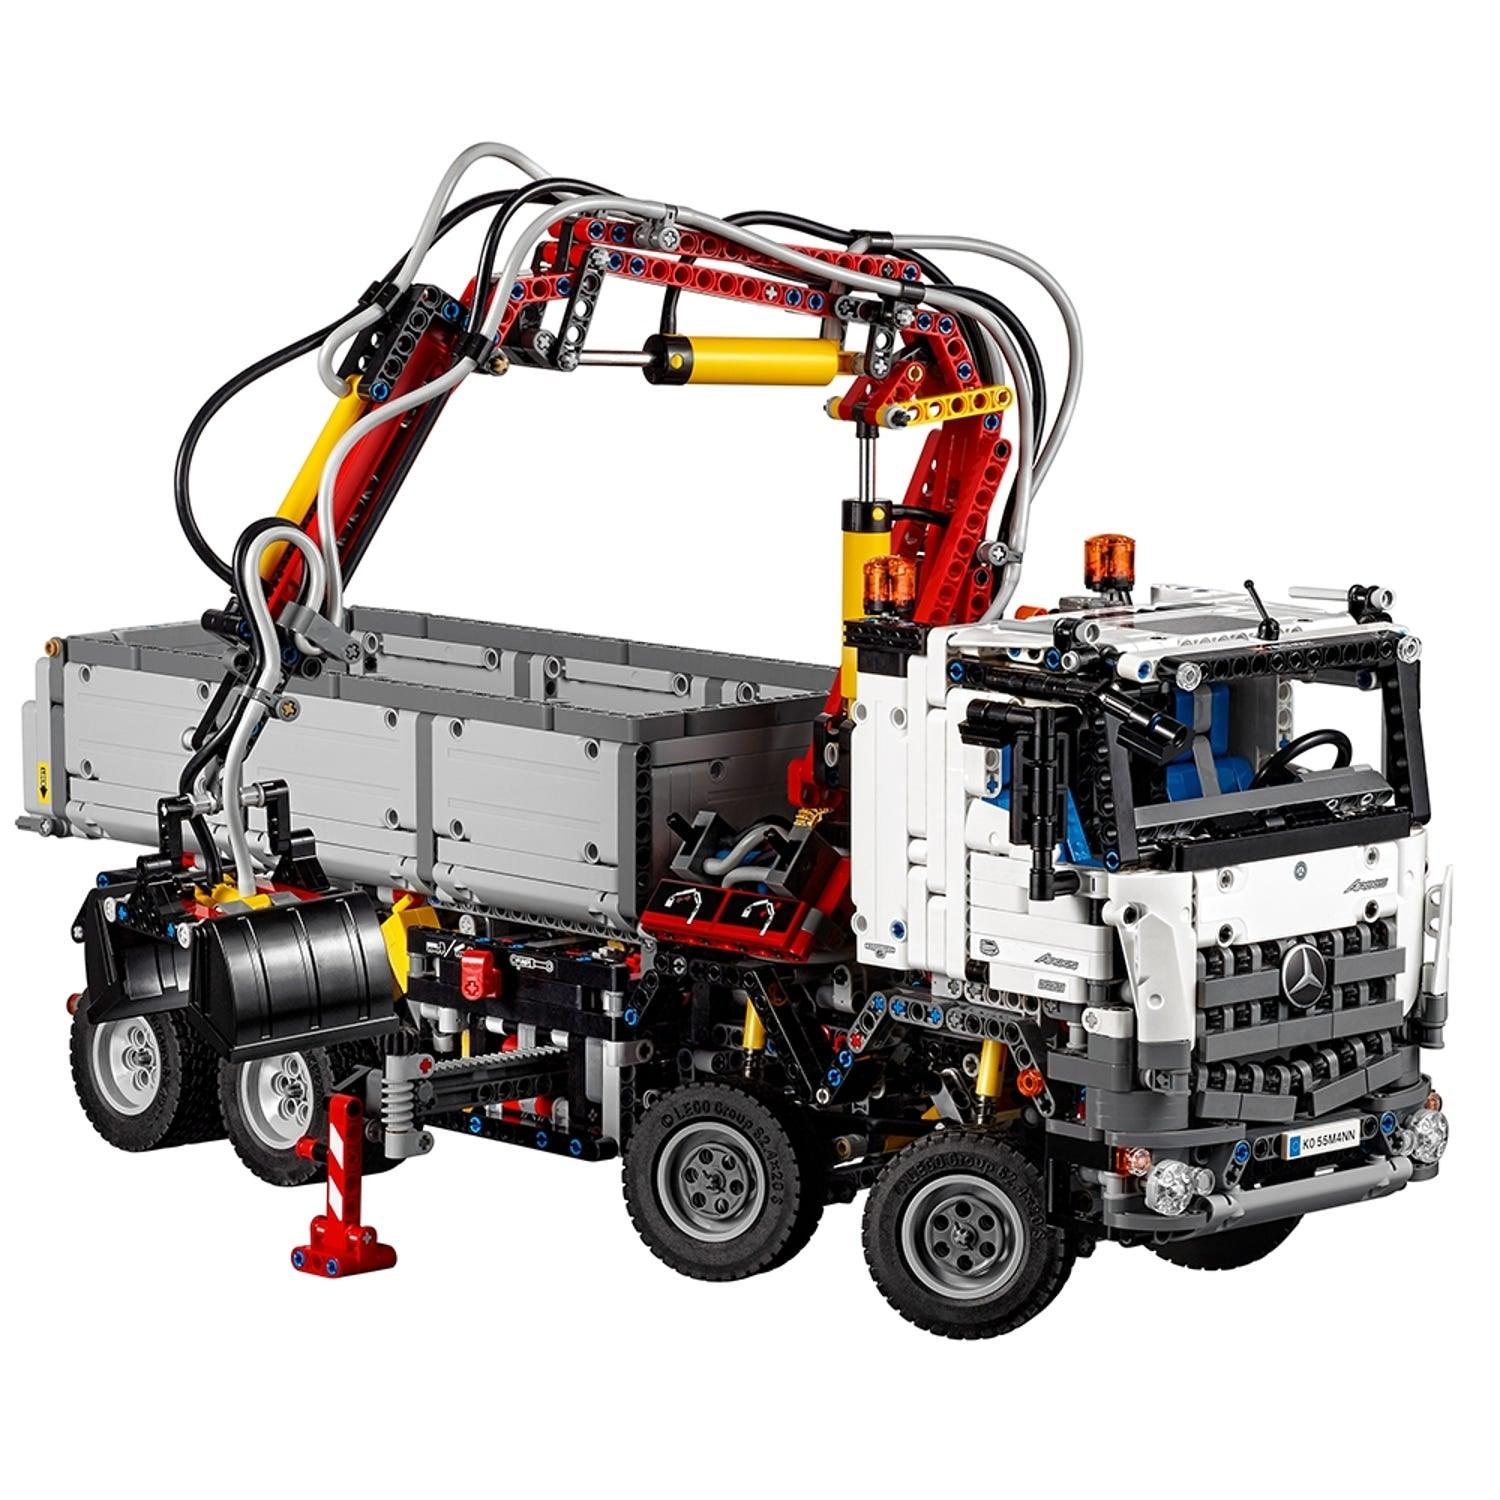 LEGO Mercedes Arocs Actros vrachtwagen met kraan 42043 Technic LEGO TECHNIC @ 2TTOYS LEGO €. 349.99